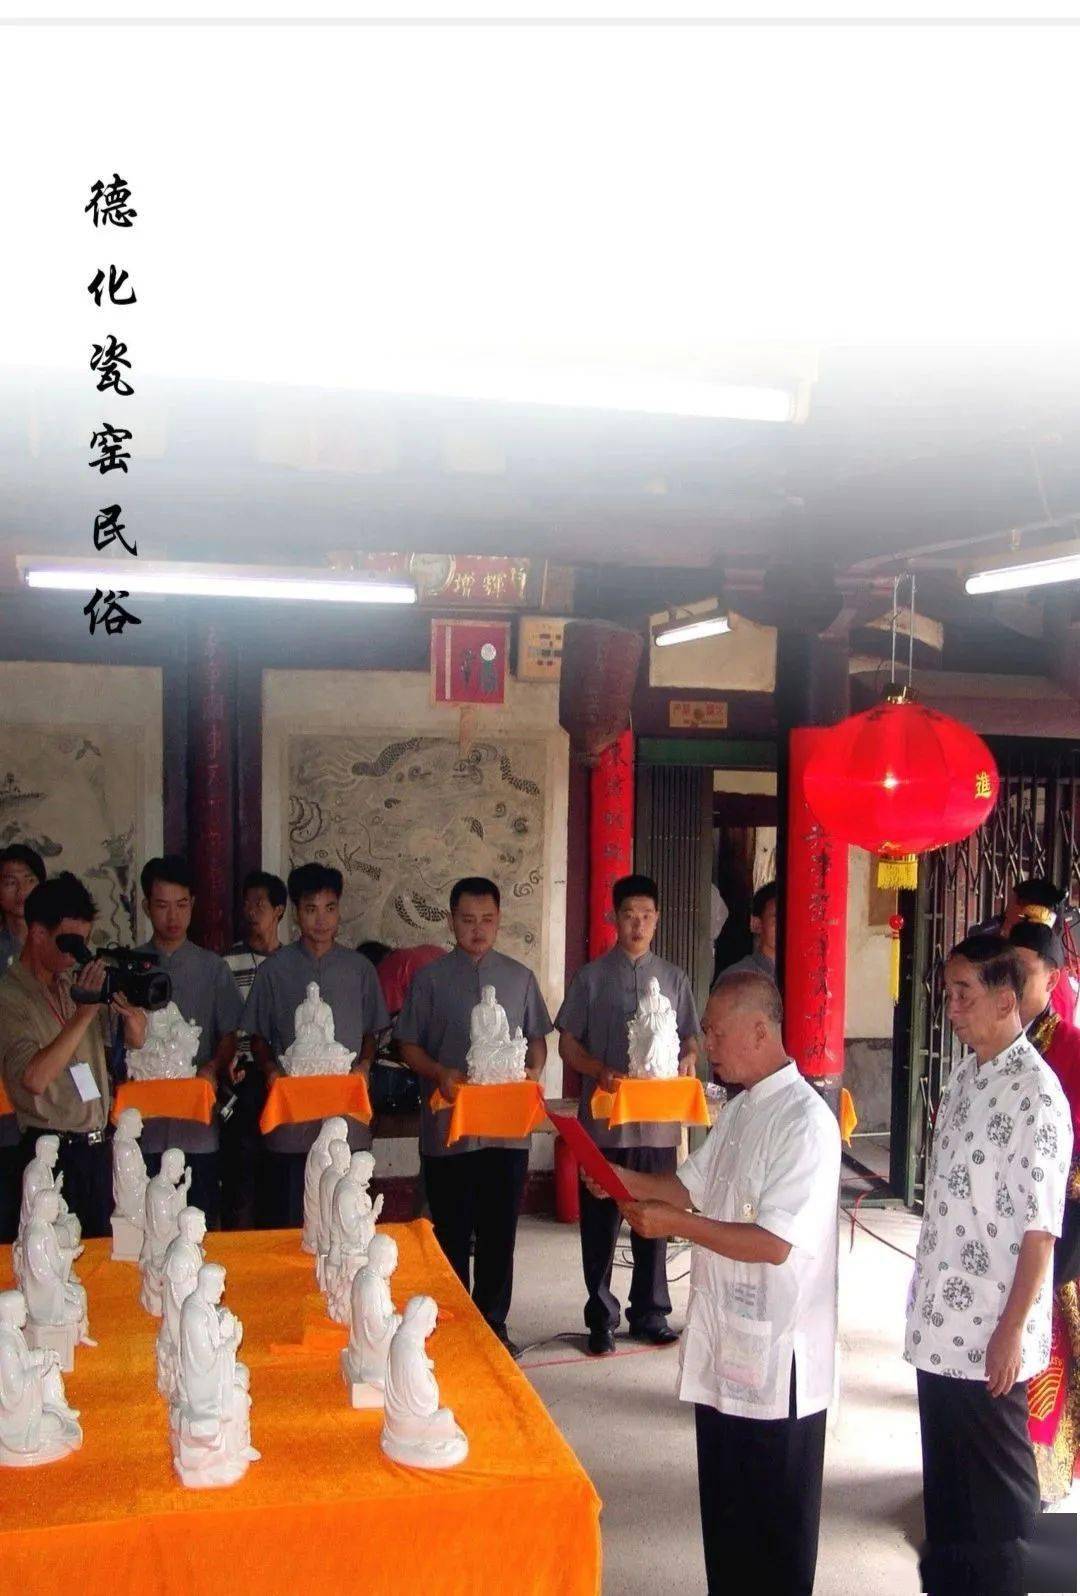 新书发布 | 德化编印陶瓷基本知识手册《中国白·德化瓷》